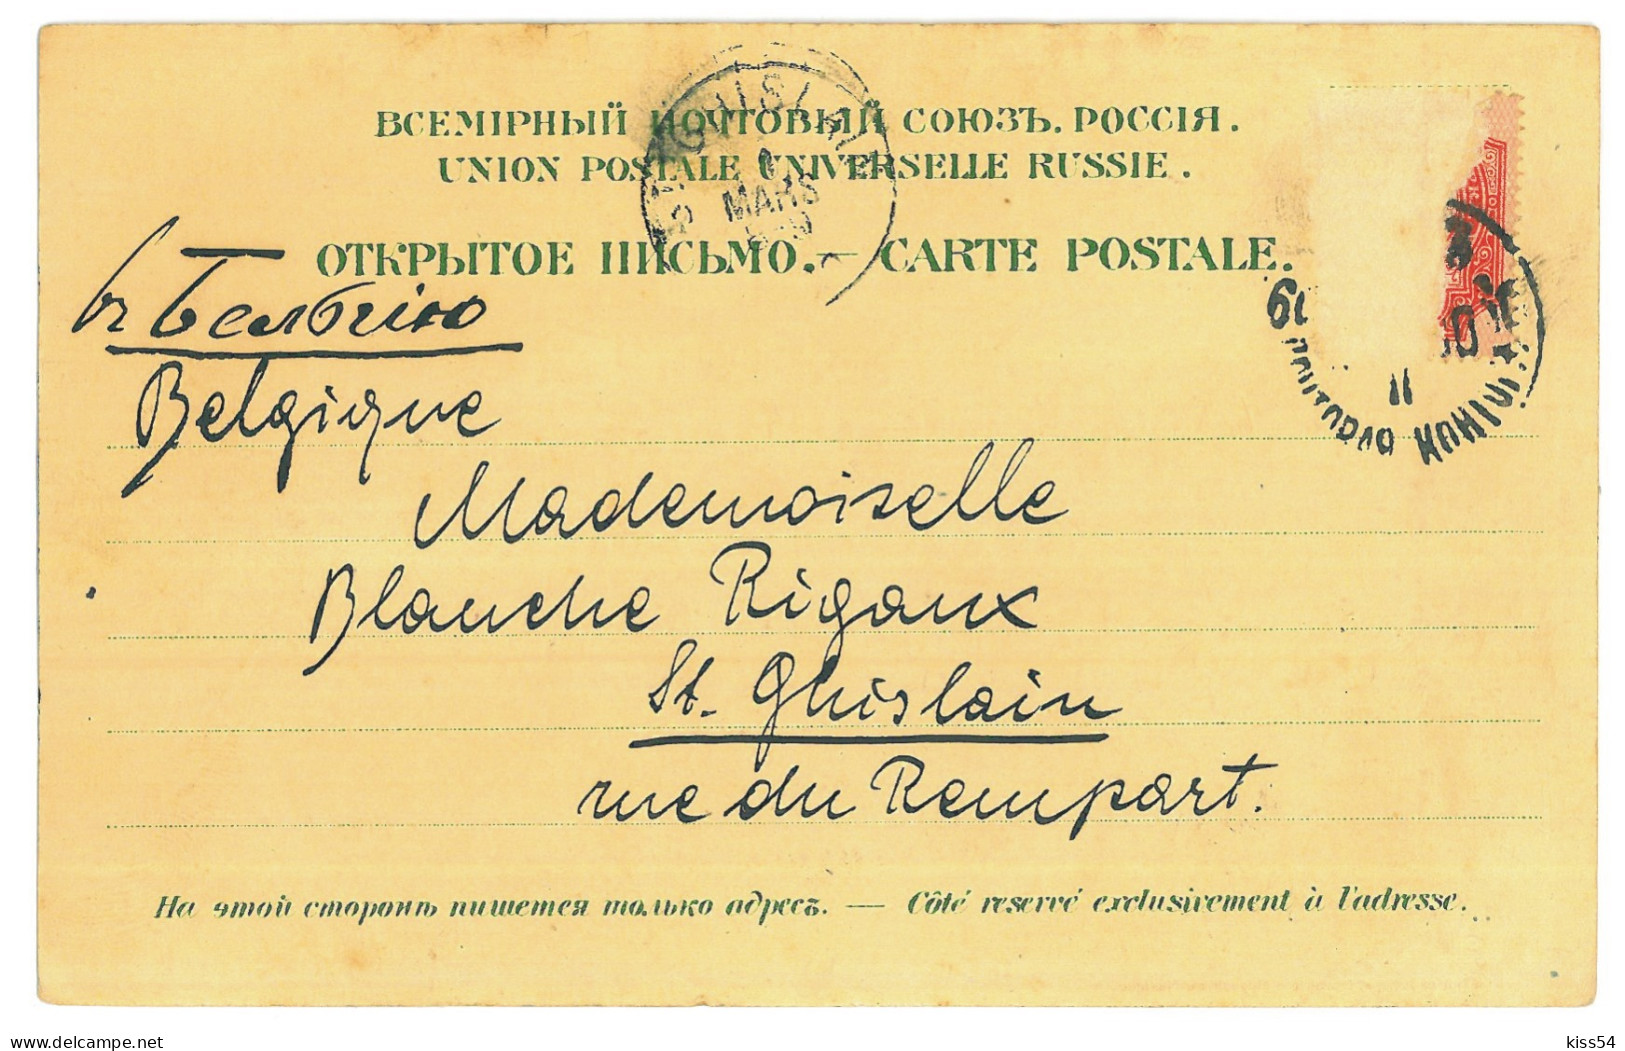 UK 75 - 24117 KIEV, Litho, Ukraine - Old Postcard - Used - 1900 - Ucrania